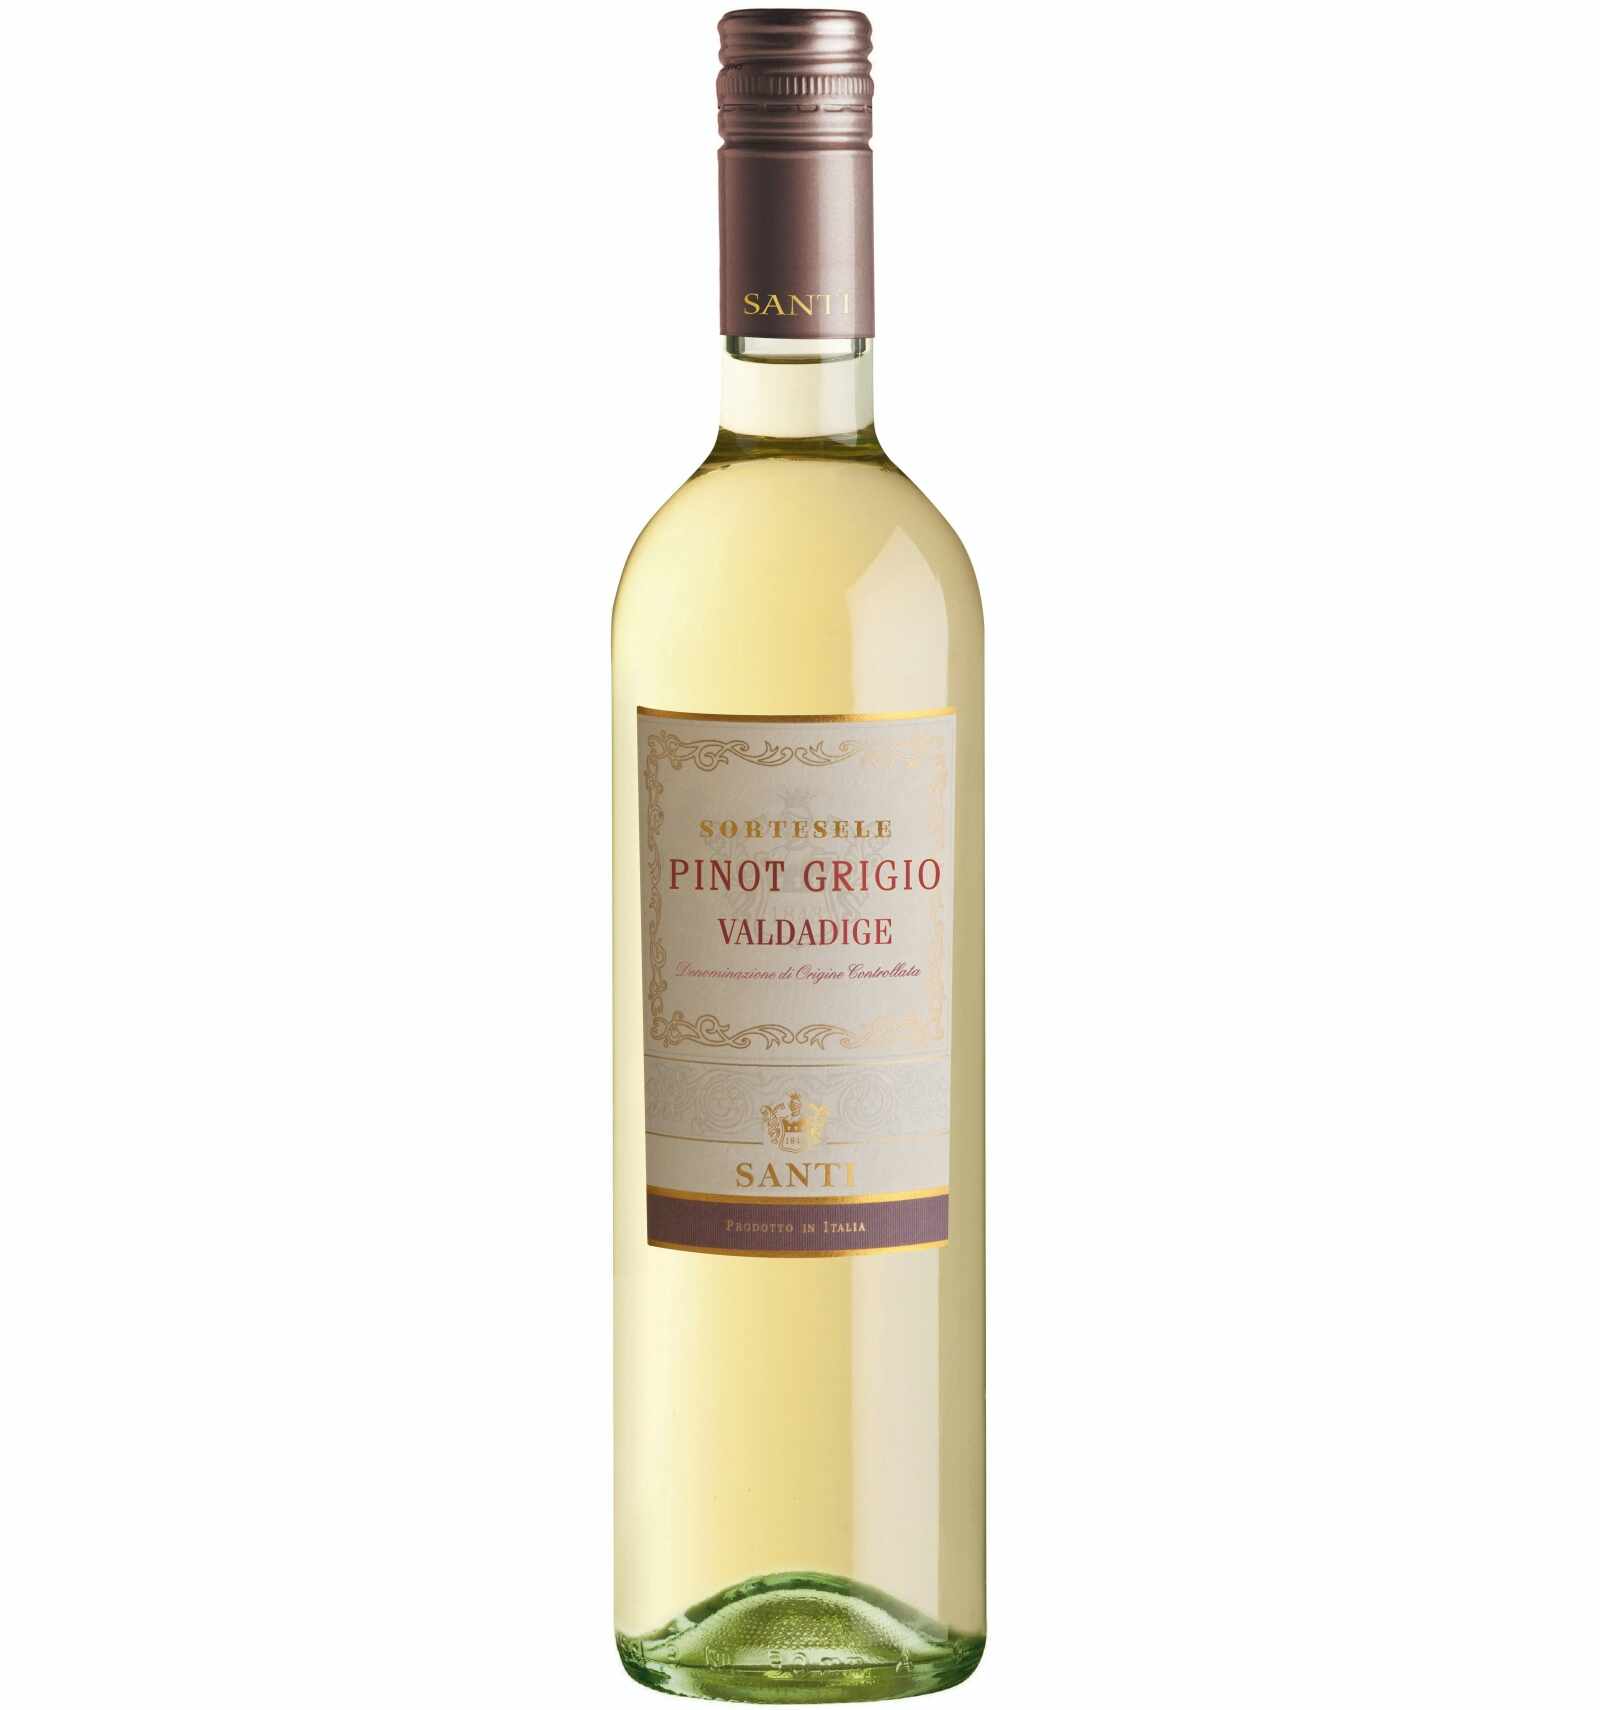 Vin alb, Pinot Grigio, Santi Sortesele Valdadige, 12.5% alc., 0.75L, Italia